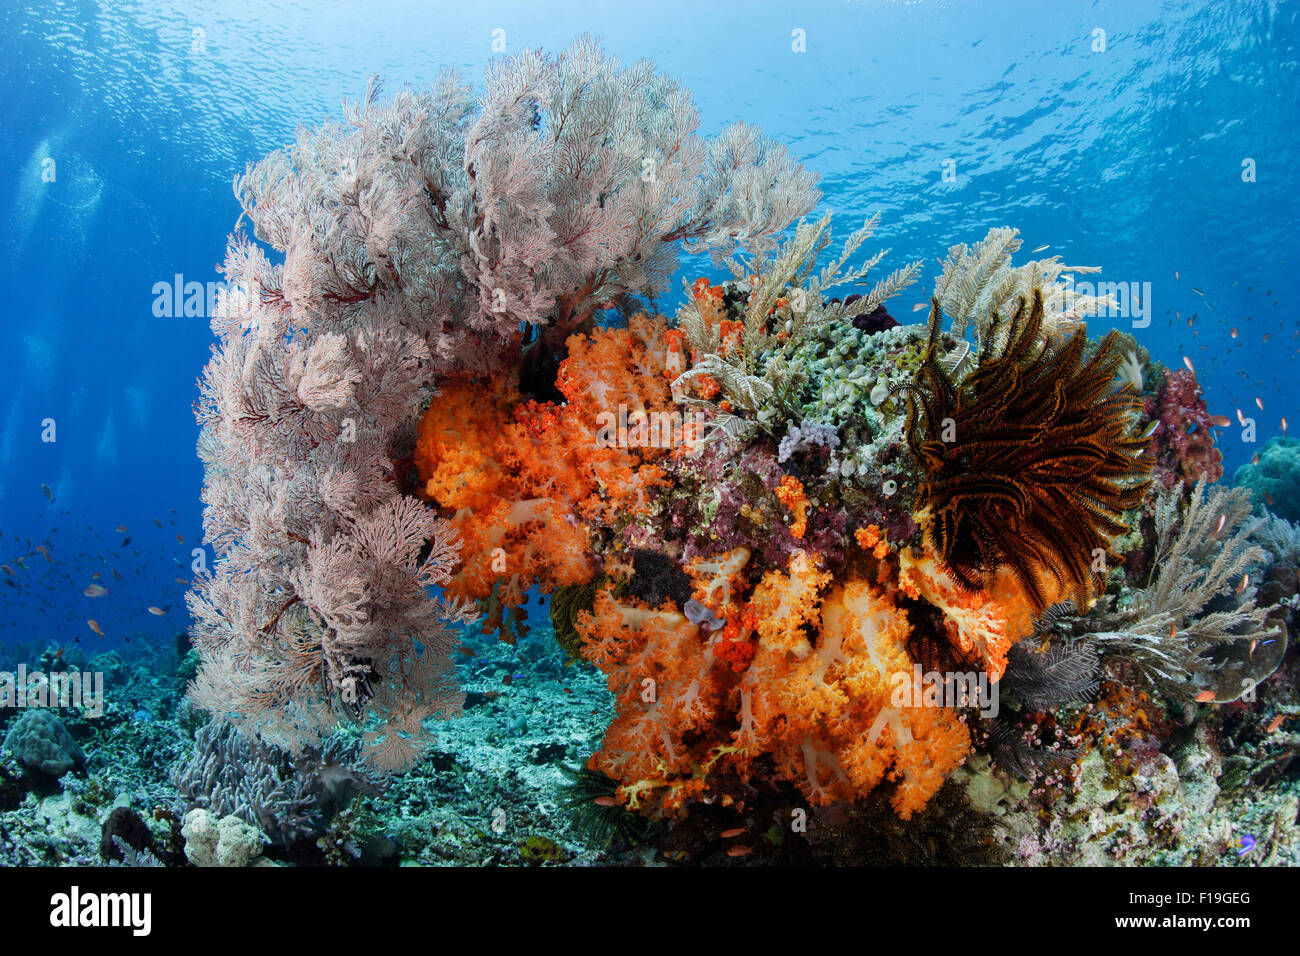 px0186-D. bunte Bommie auf Riff, Weichkorallen, Gorgonien, Seelilien und Hydrozoen drapiert. Indonesien, tropischen Pazifik O Stockfoto